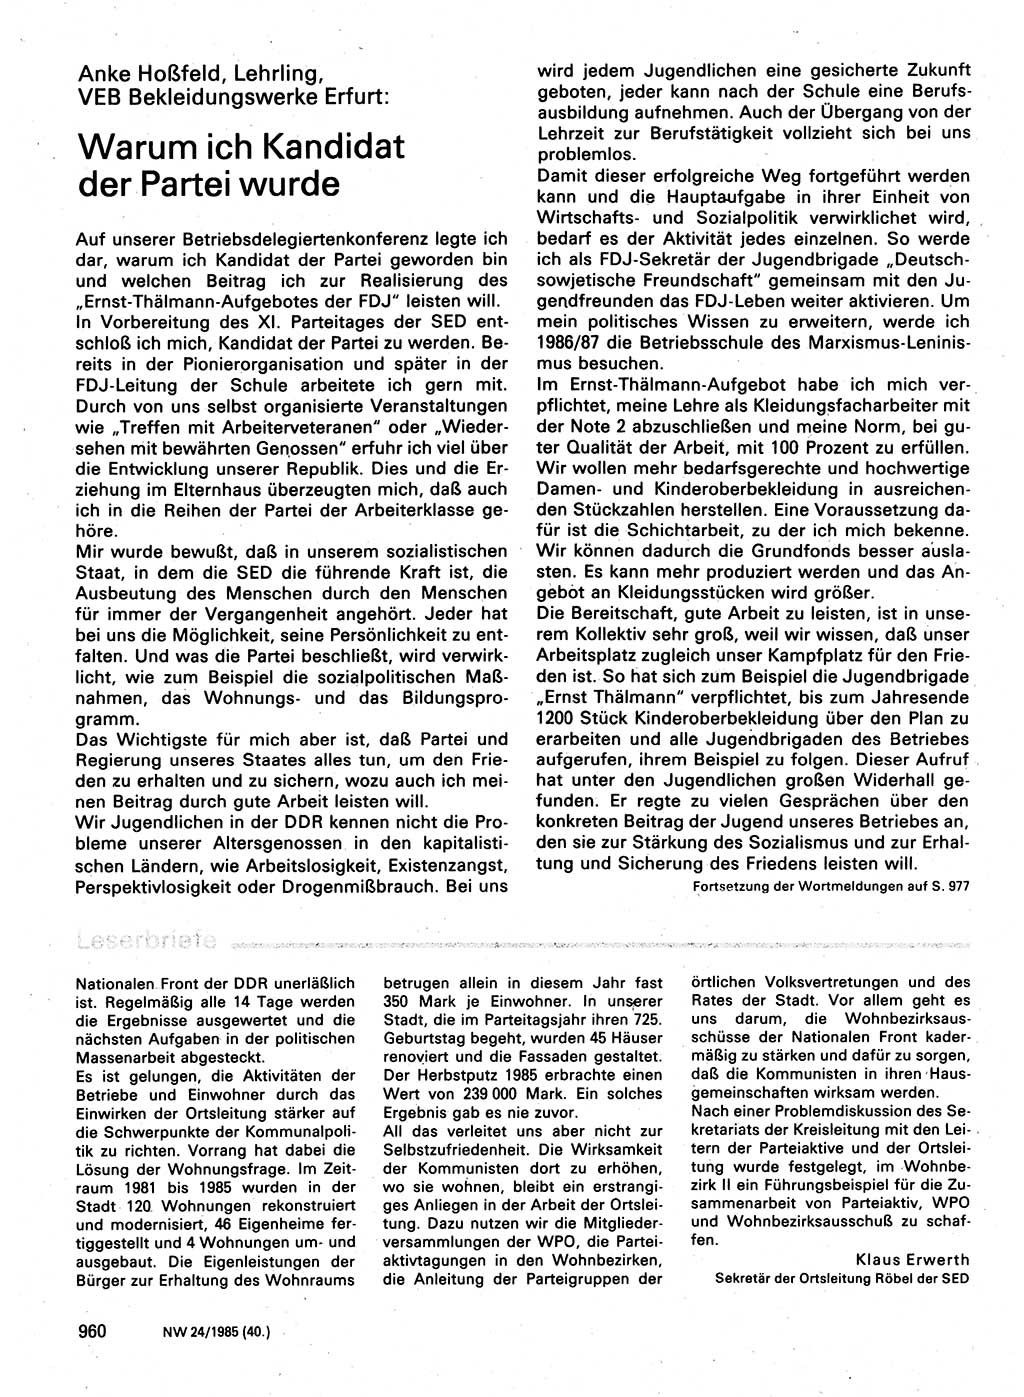 Neuer Weg (NW), Organ des Zentralkomitees (ZK) der SED (Sozialistische Einheitspartei Deutschlands) für Fragen des Parteilebens, 40. Jahrgang [Deutsche Demokratische Republik (DDR)] 1985, Seite 960 (NW ZK SED DDR 1985, S. 960)